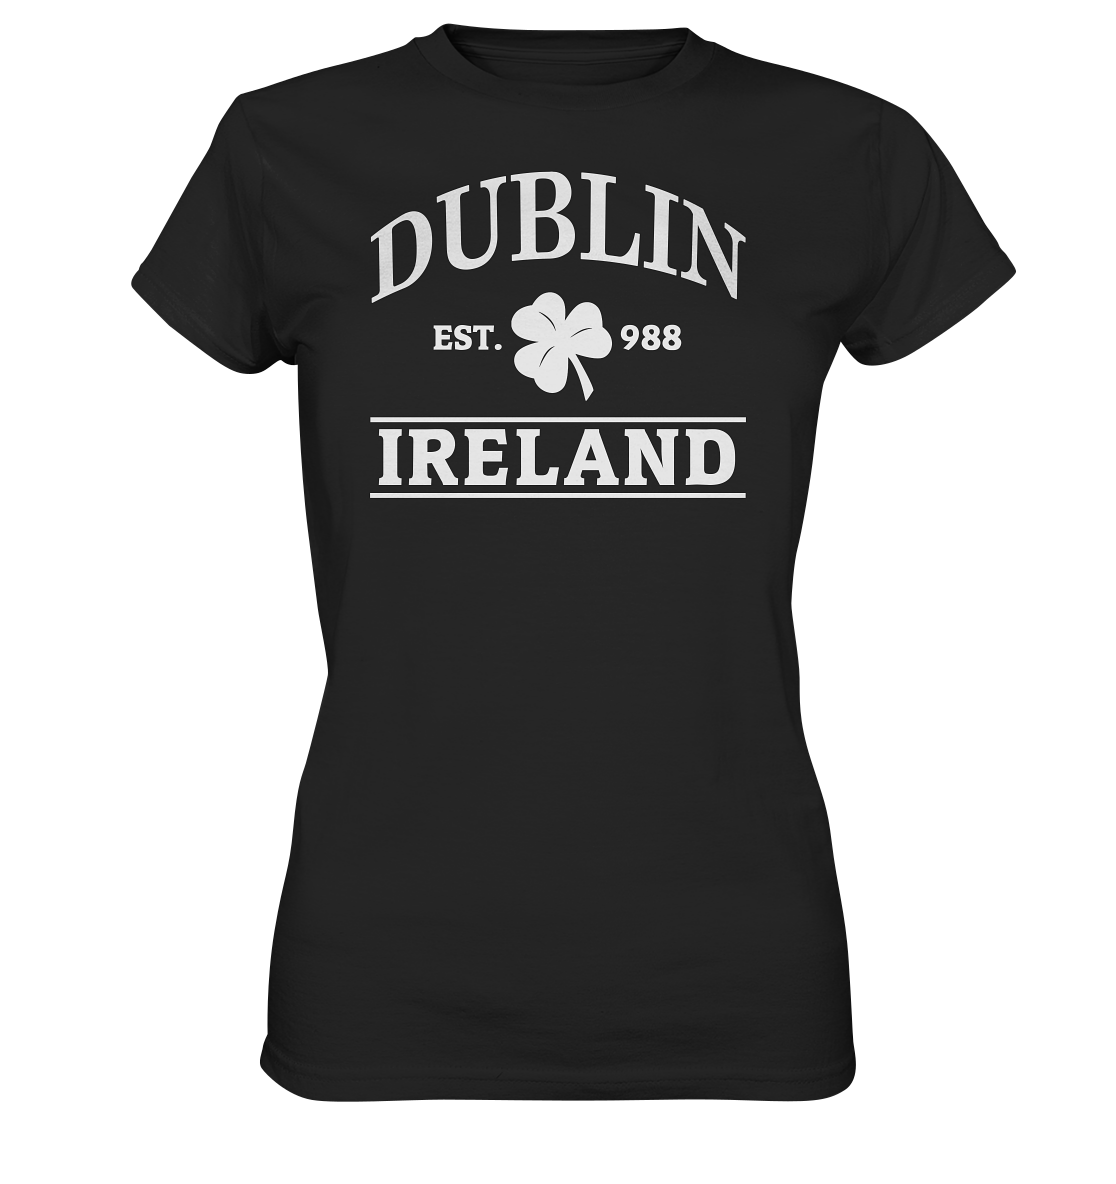 Dublin - Ireland "Est. 988" - Ladies Premium Shirt